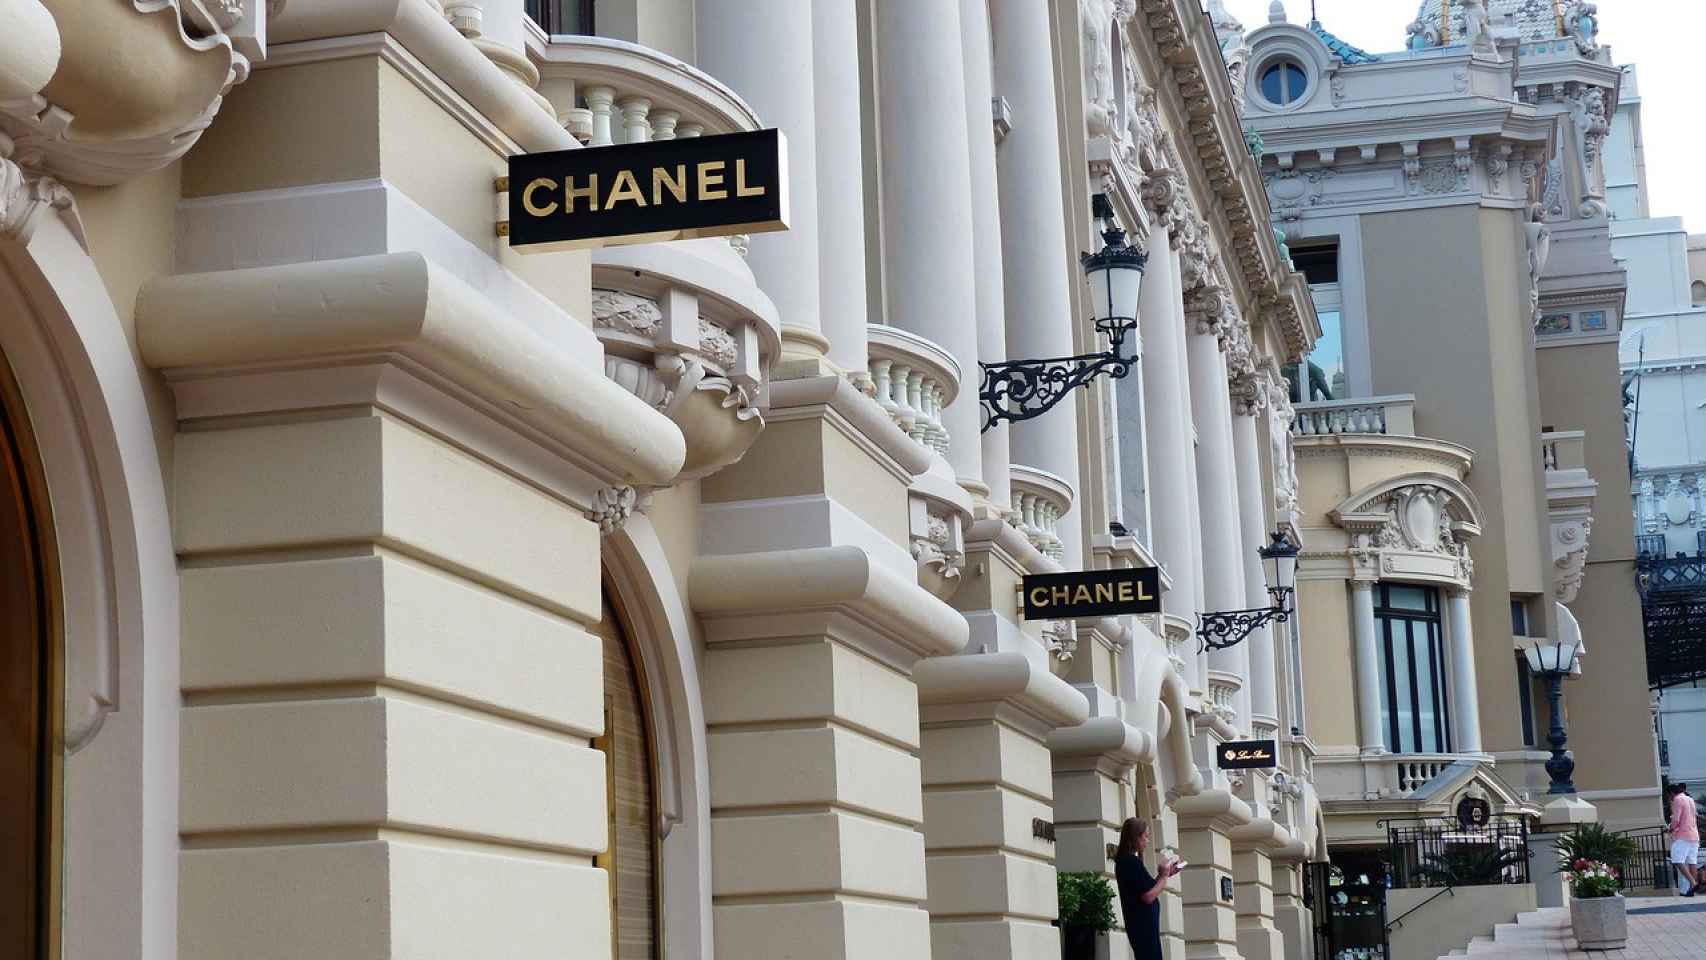 Una de las calles con tiendas de marcas de lujo en Mónaco.